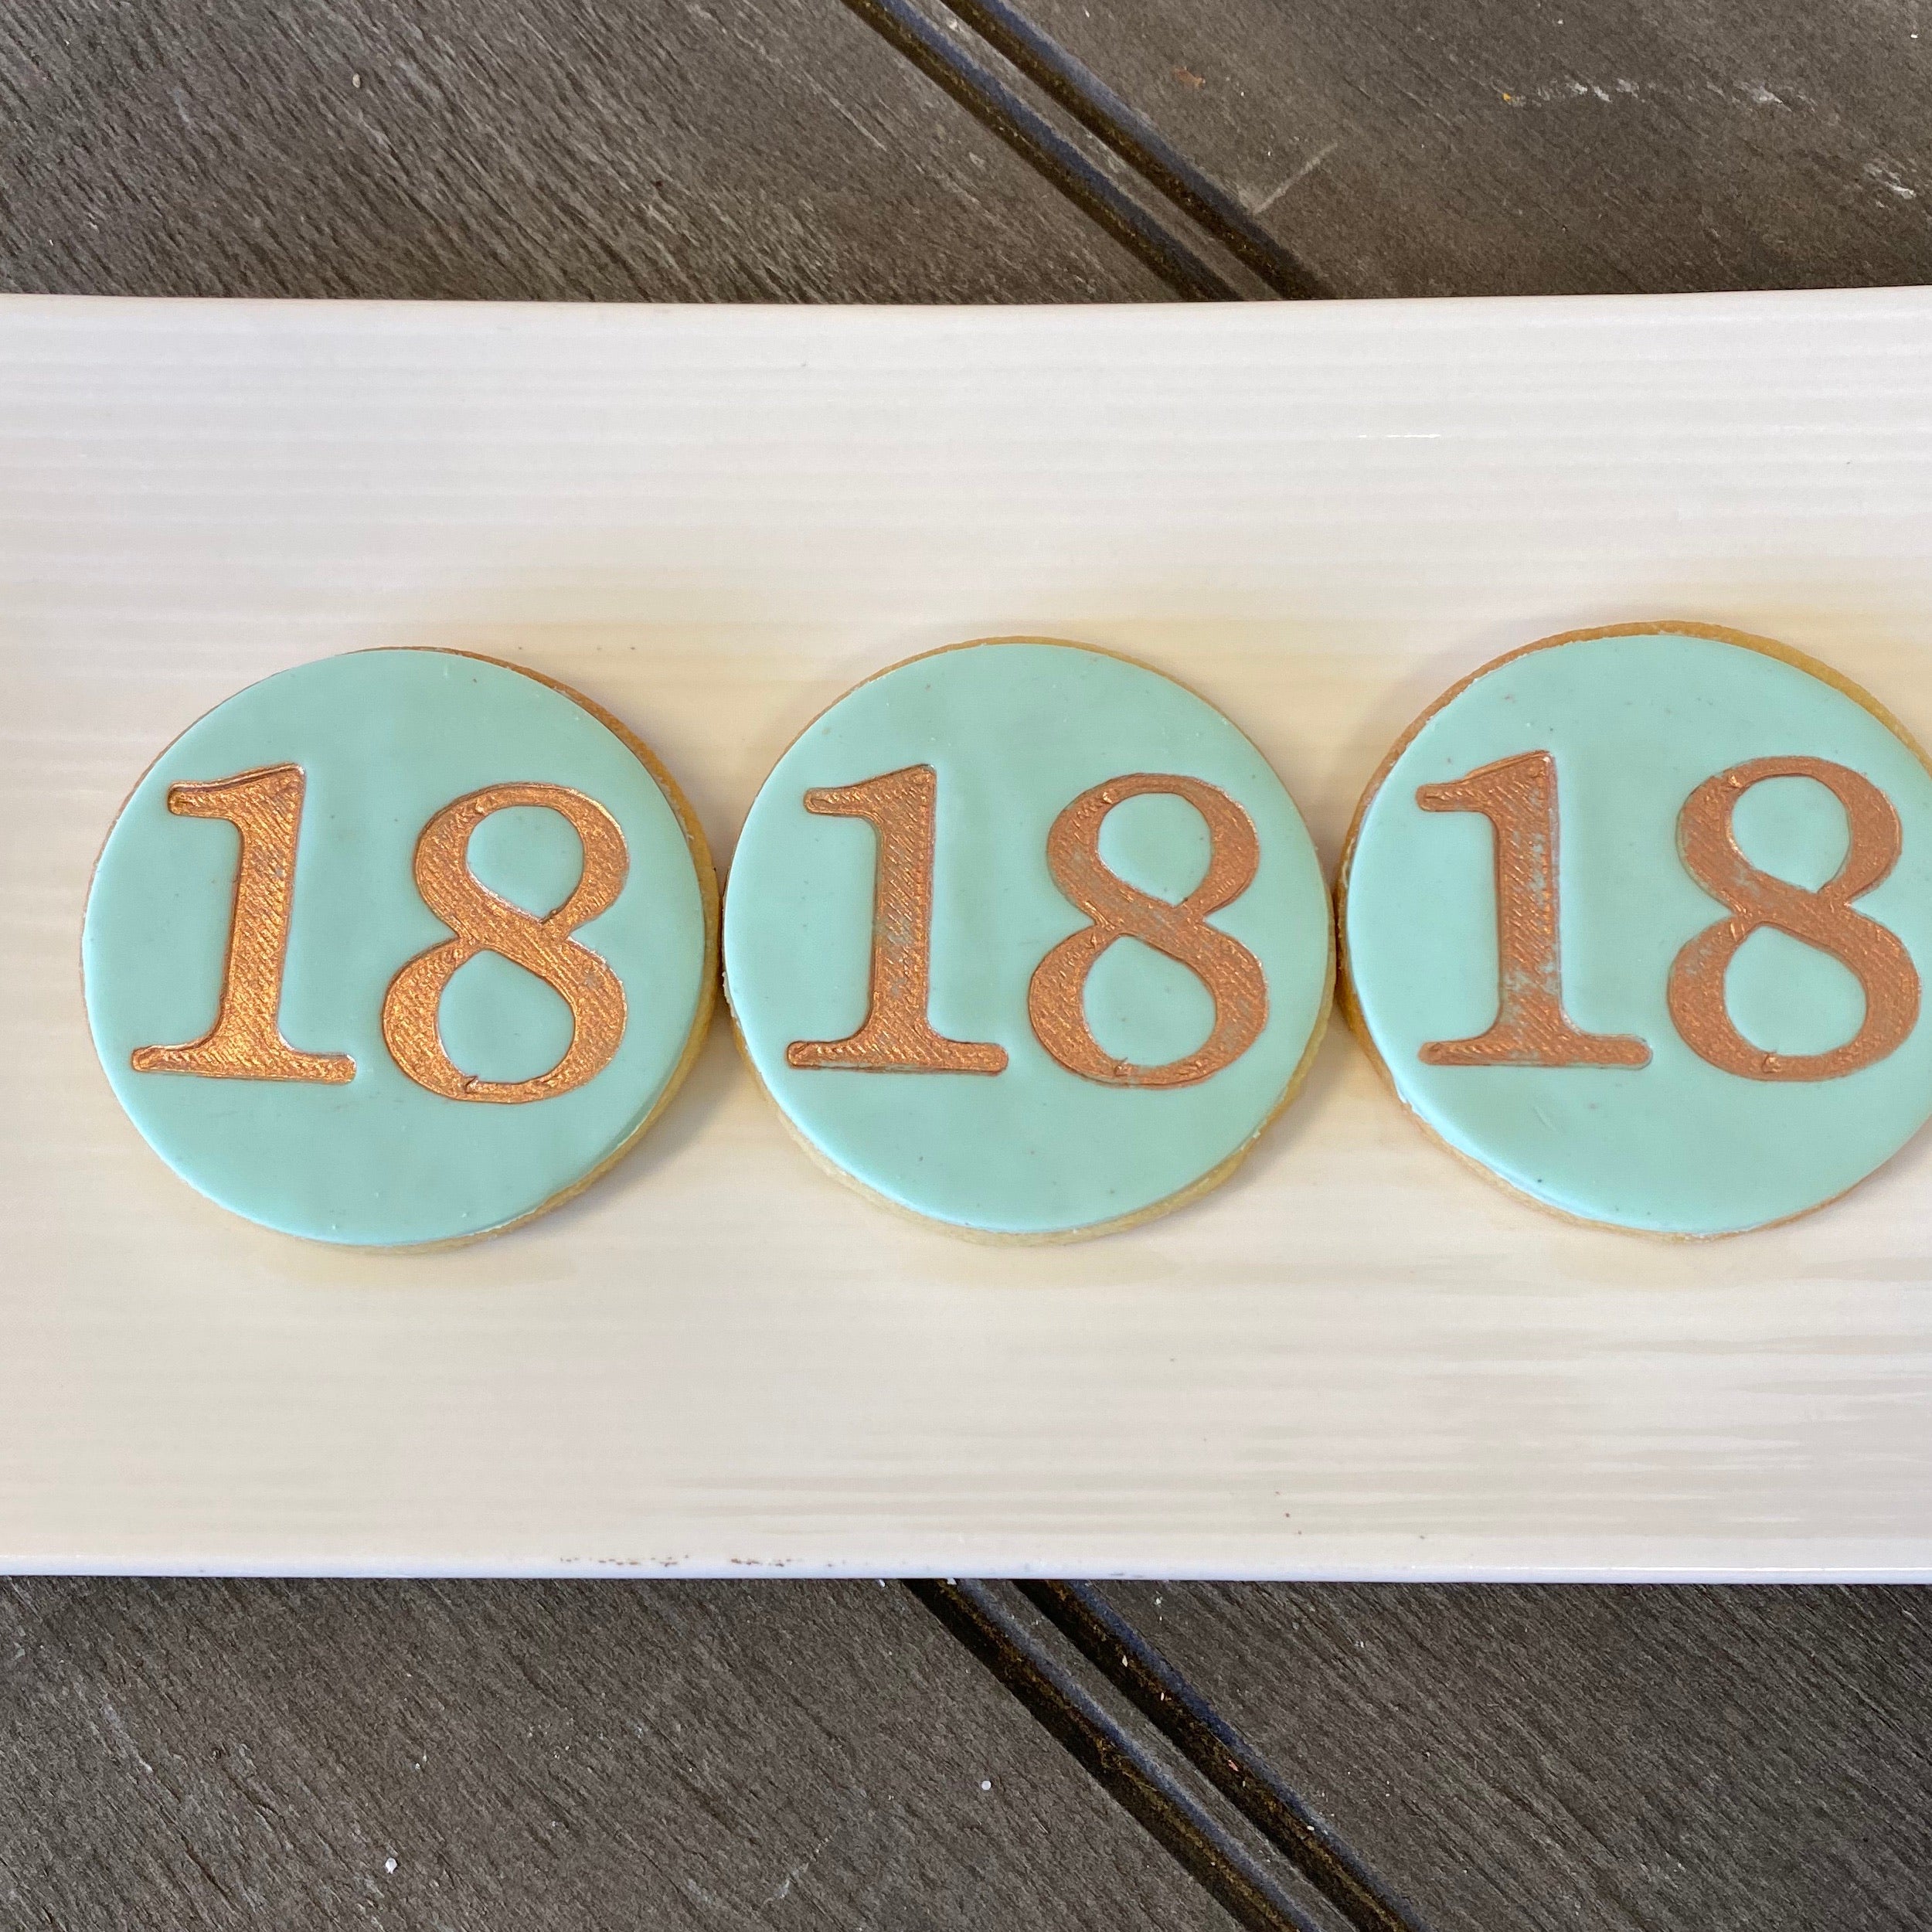 Number cookie “18”